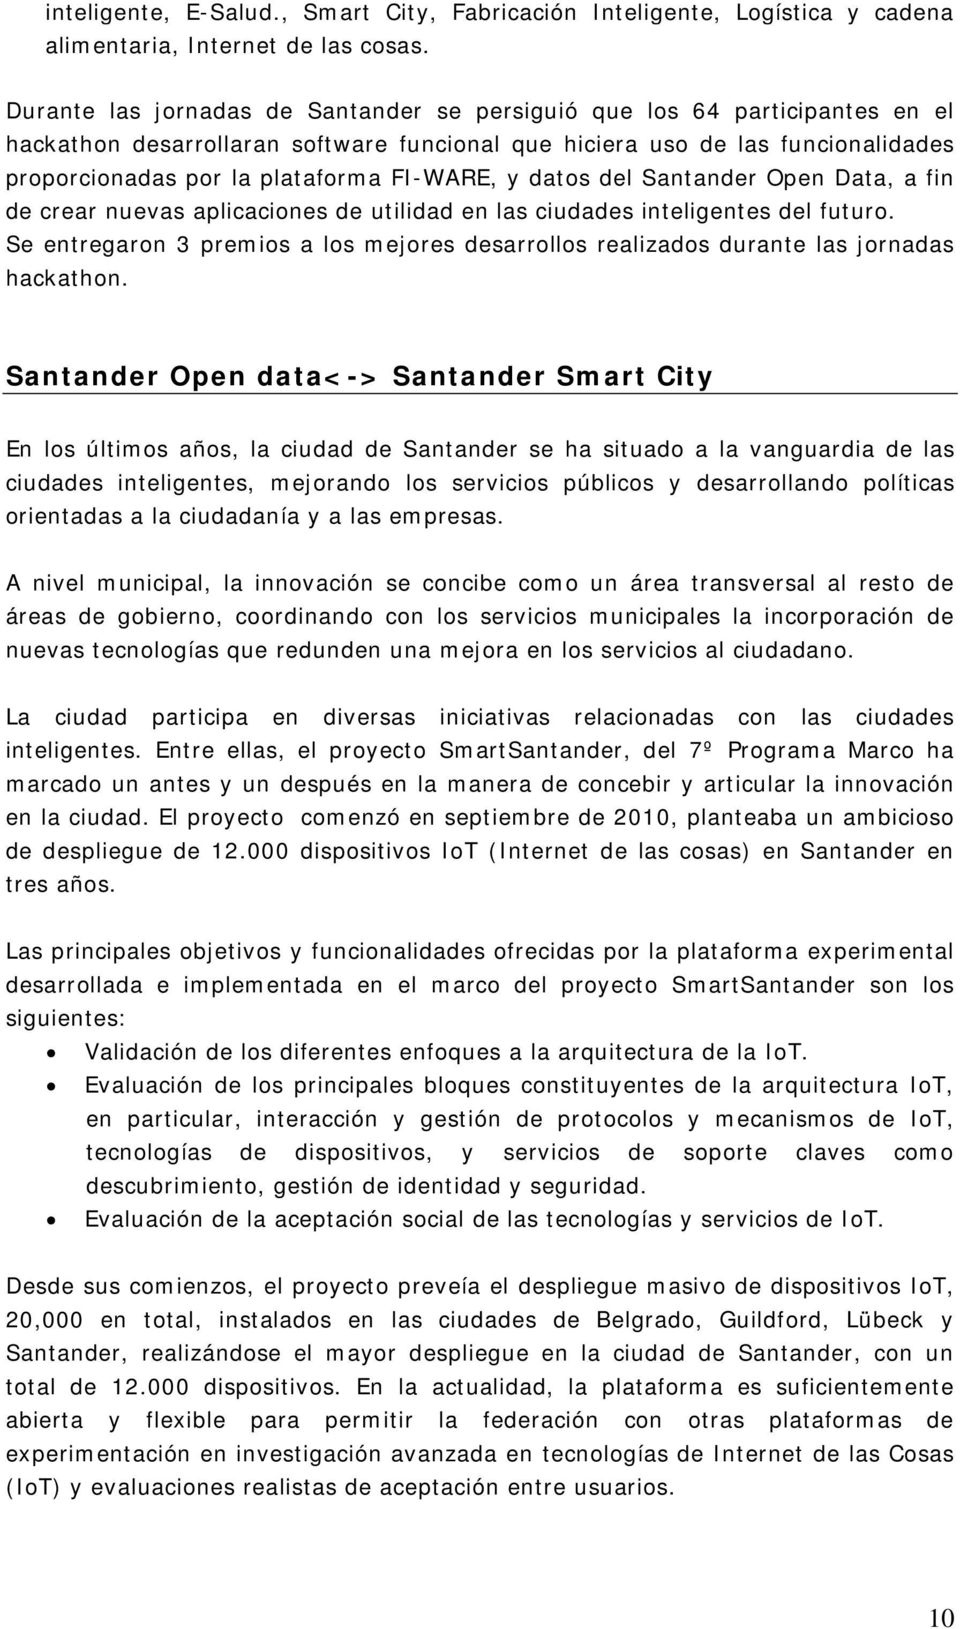 FI-WARE, y datos del Santander Open Data, a fin de crear nuevas aplicaciones de utilidad en las ciudades inteligentes del futuro.